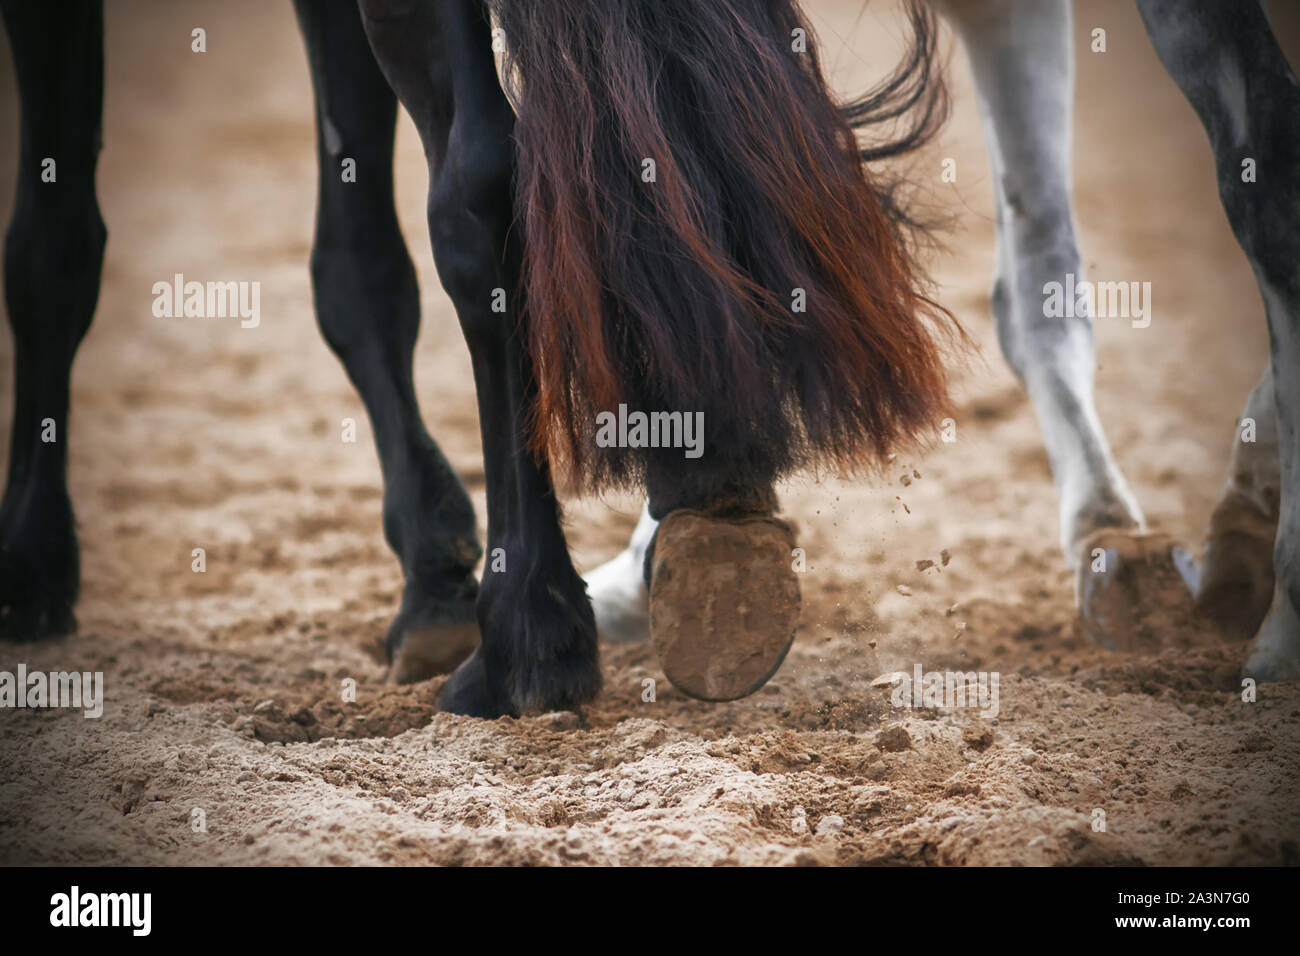 Die hufe von einem schwarzen Pferd mit einem schönen flauschigen Schwanz, der in einer sandigen Feld zusammen mit ein graues Pferd läuft Stockfoto